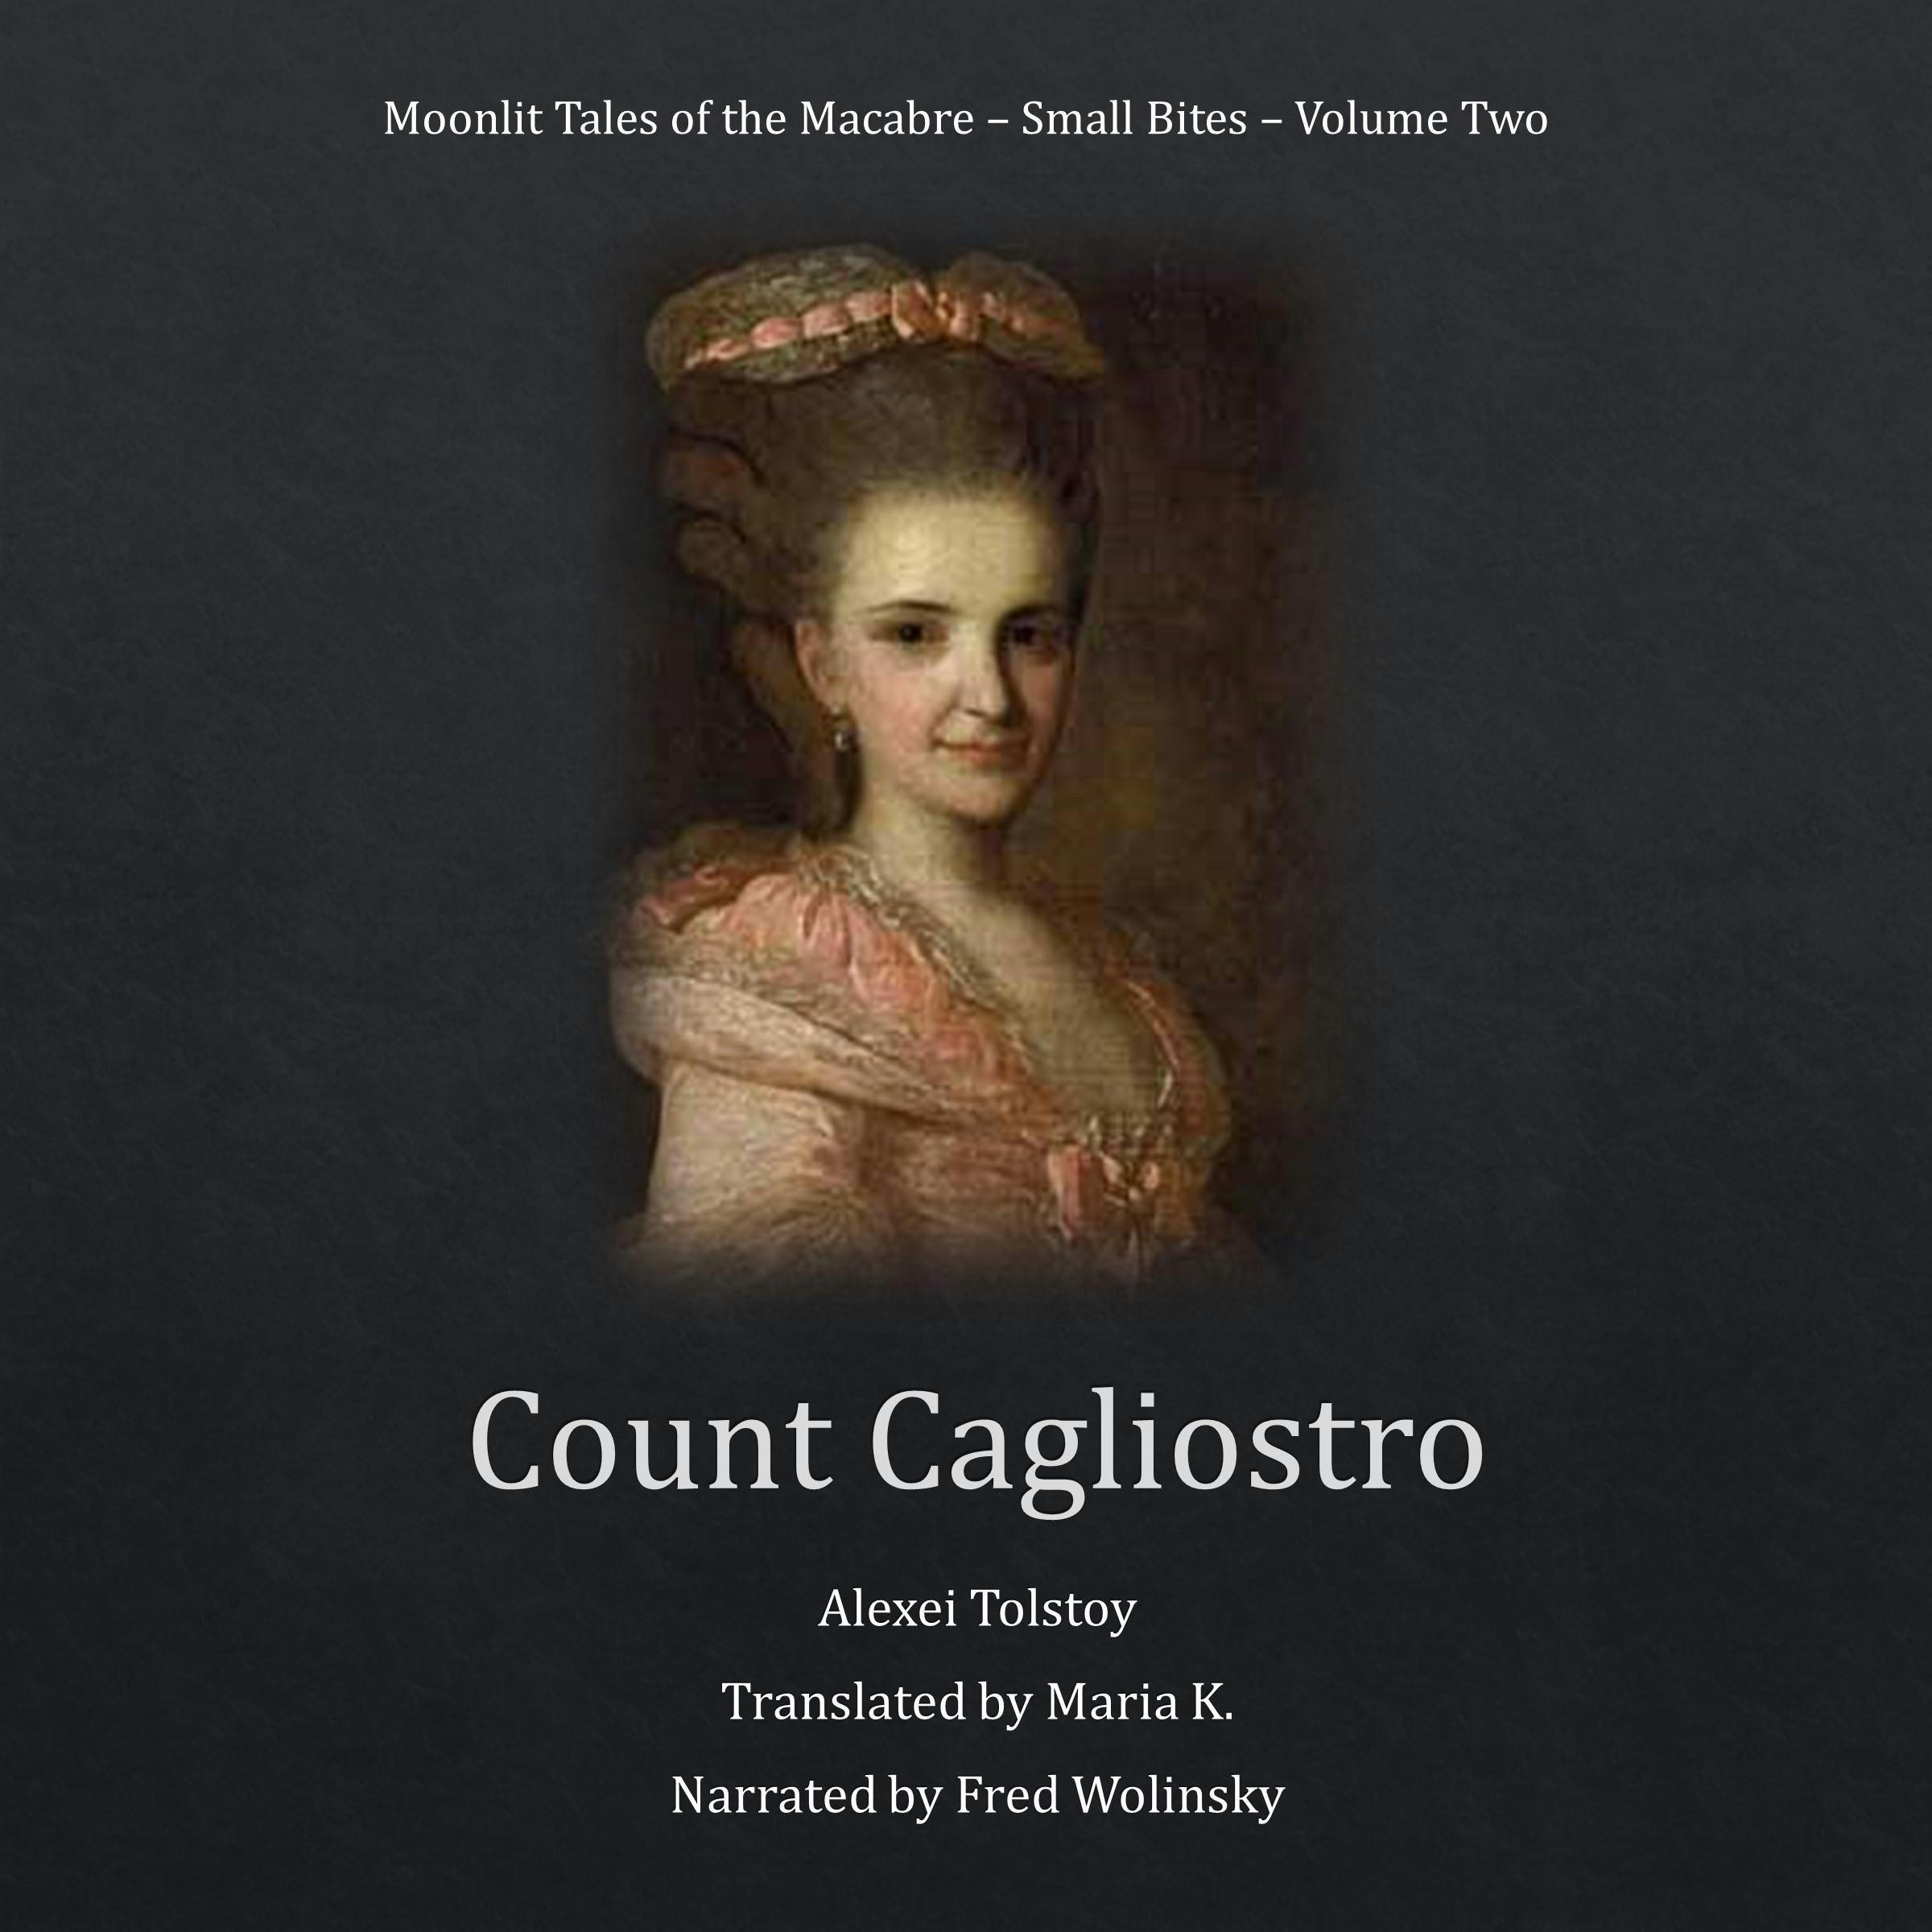 Count Cagliostro - Alexei Tolstoy